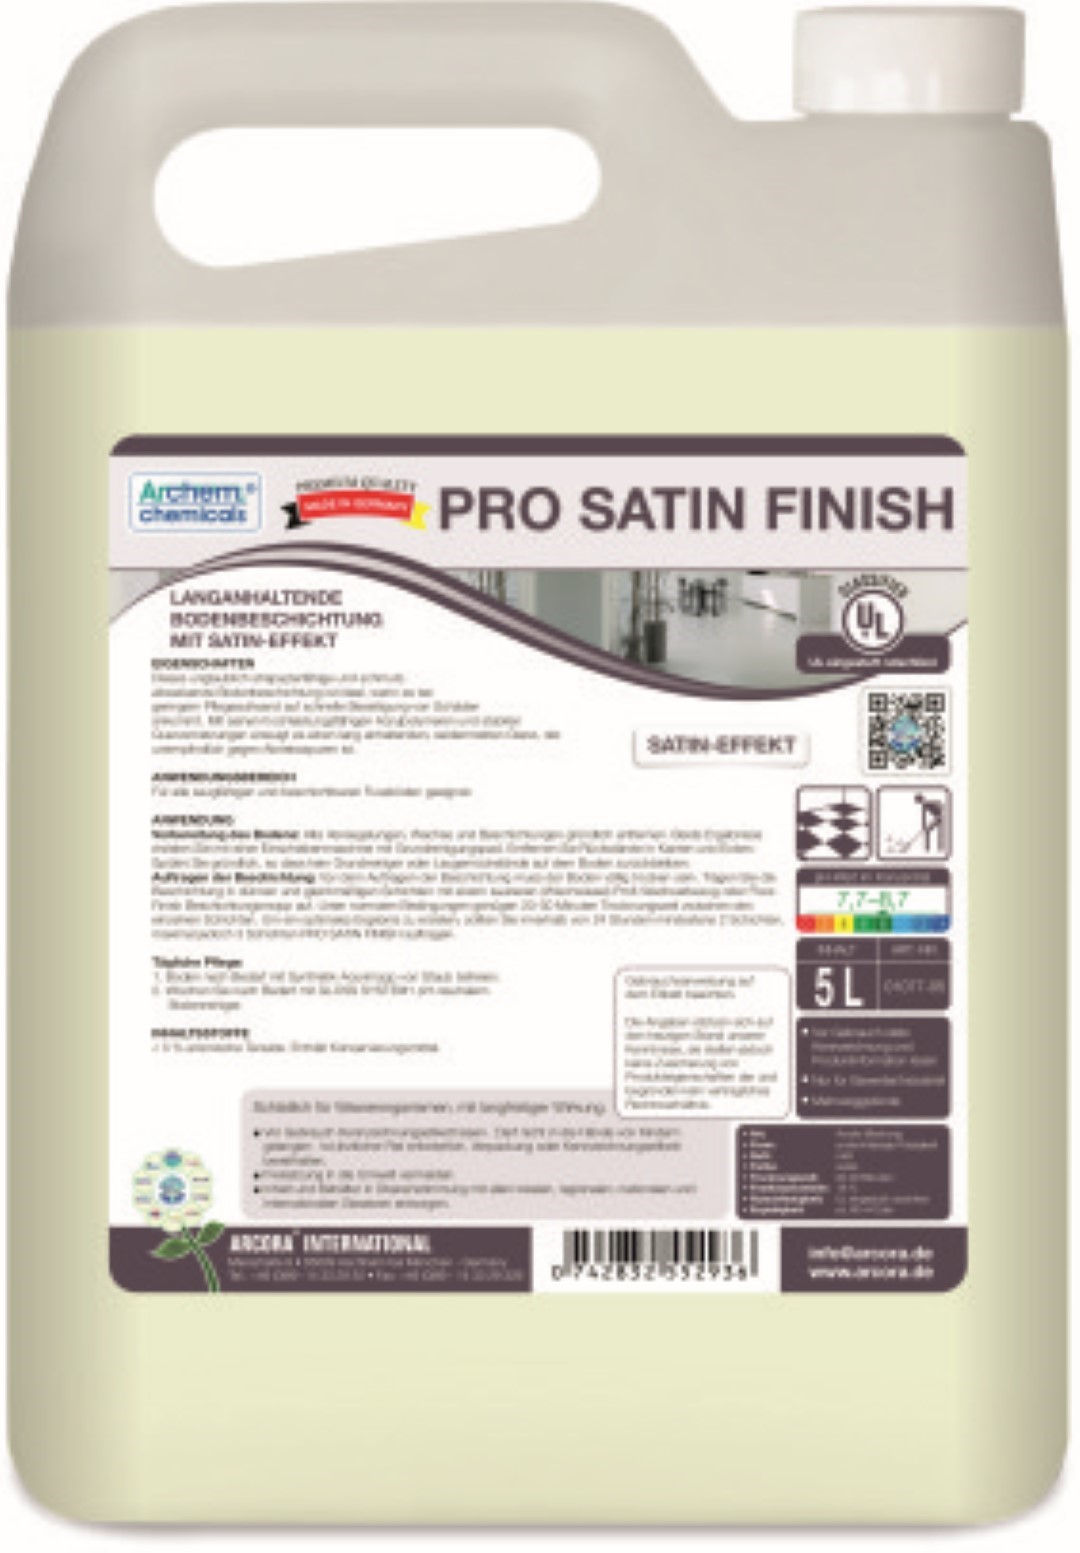 Pro Satin Finish | Bodenbeschichtung | 5 Liter Kanister